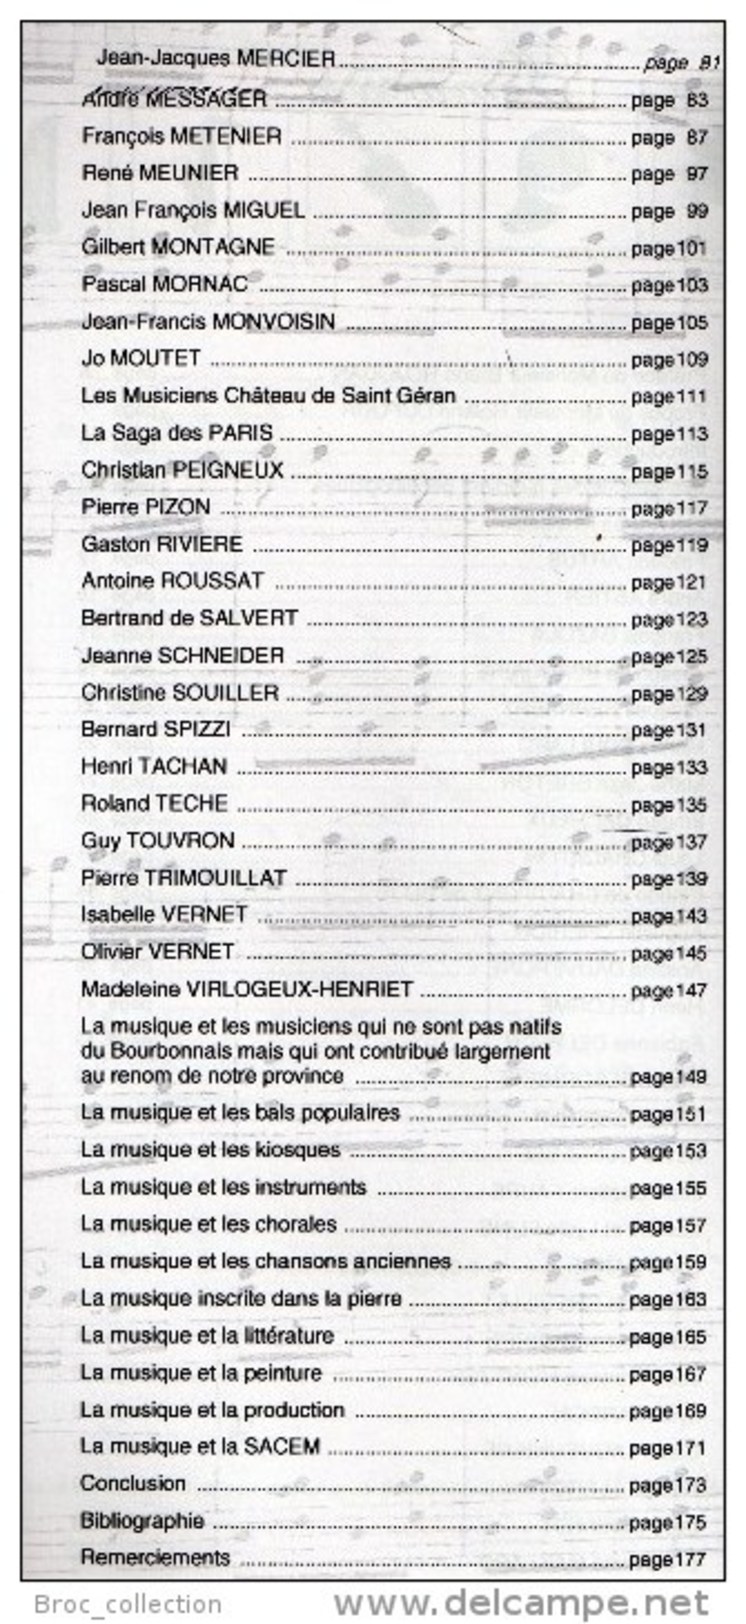 La Grande Famille Des Musiciens Bourbonnais, Cercle Généalogique Et Héraldique Du Bourbonnais, 2004, Port Offert - Bourbonnais